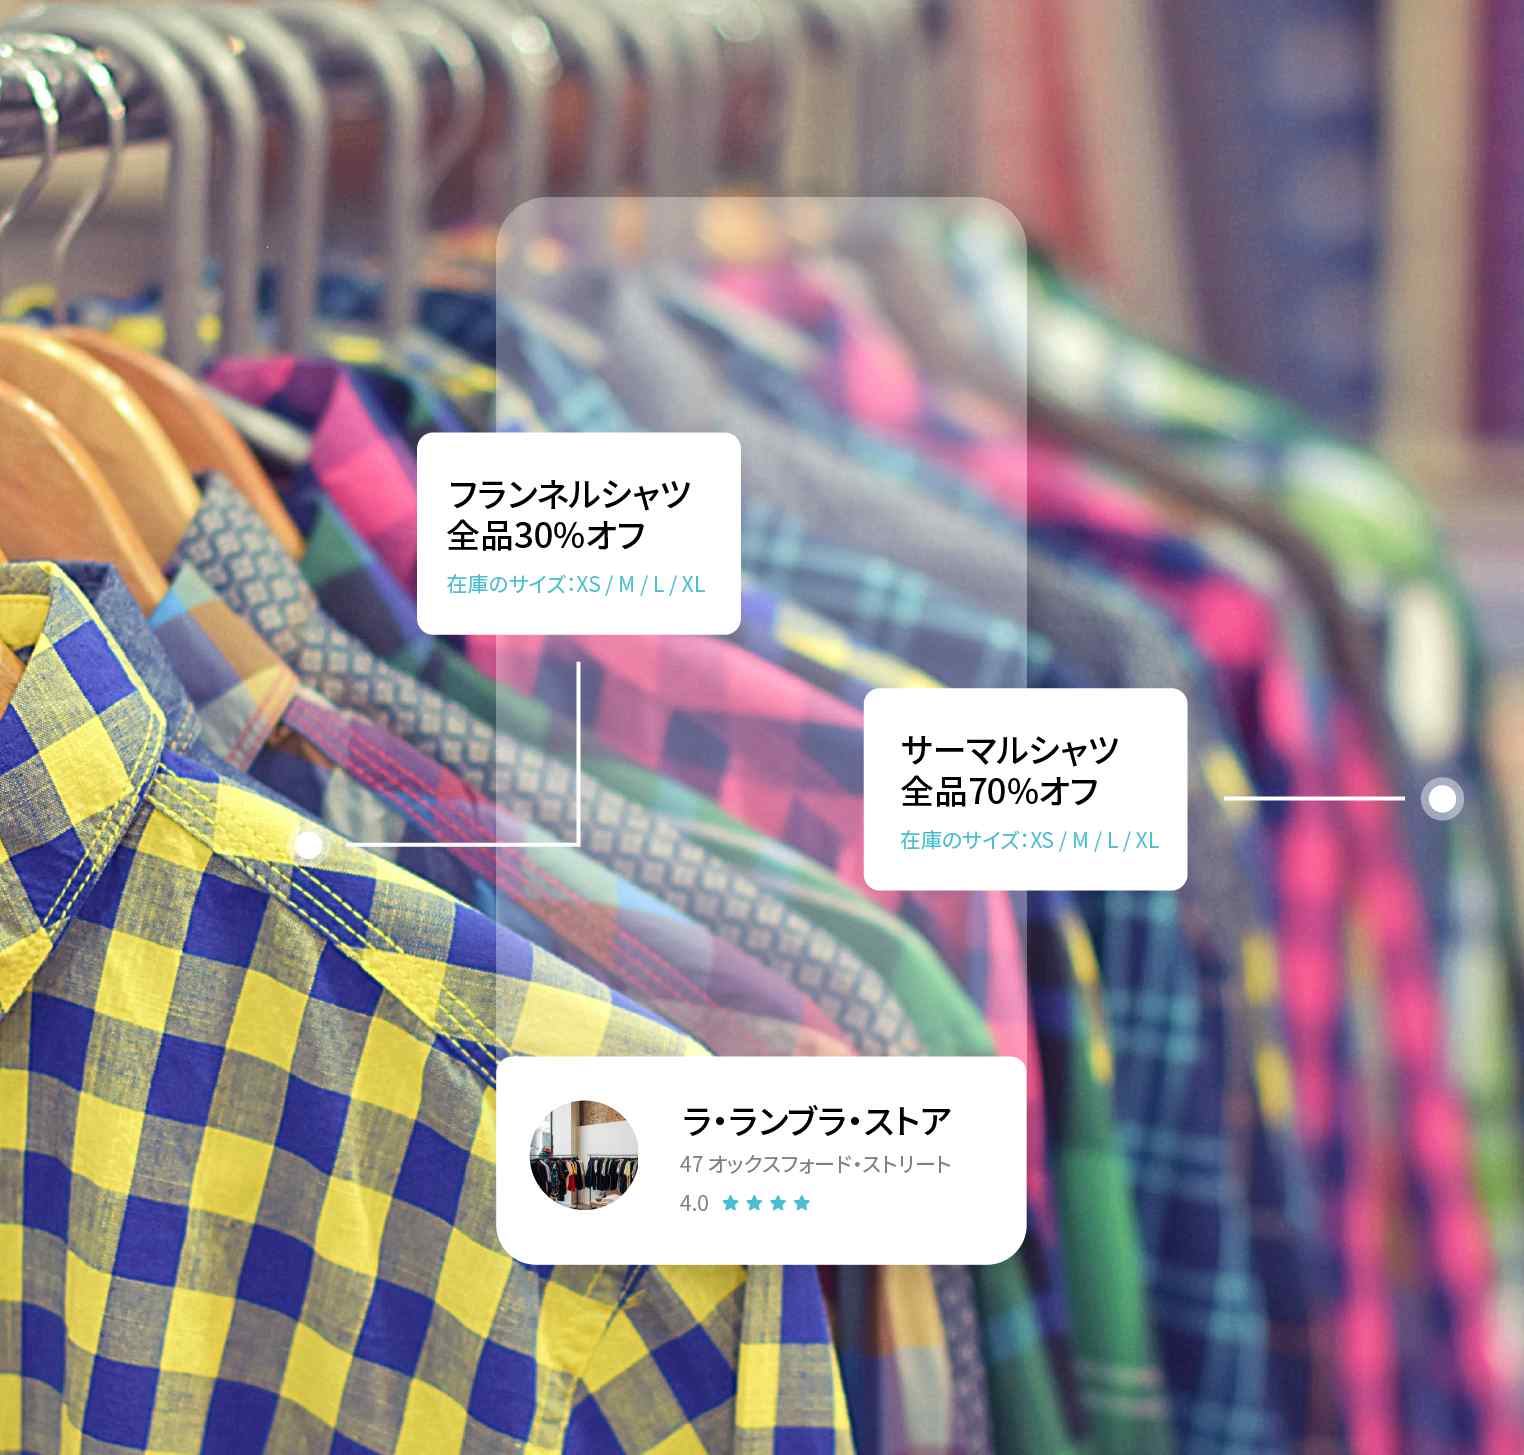 店舗でシャツのセール情報を示すVeraの完成イメージ - フランネルシャツ全品30%オフ